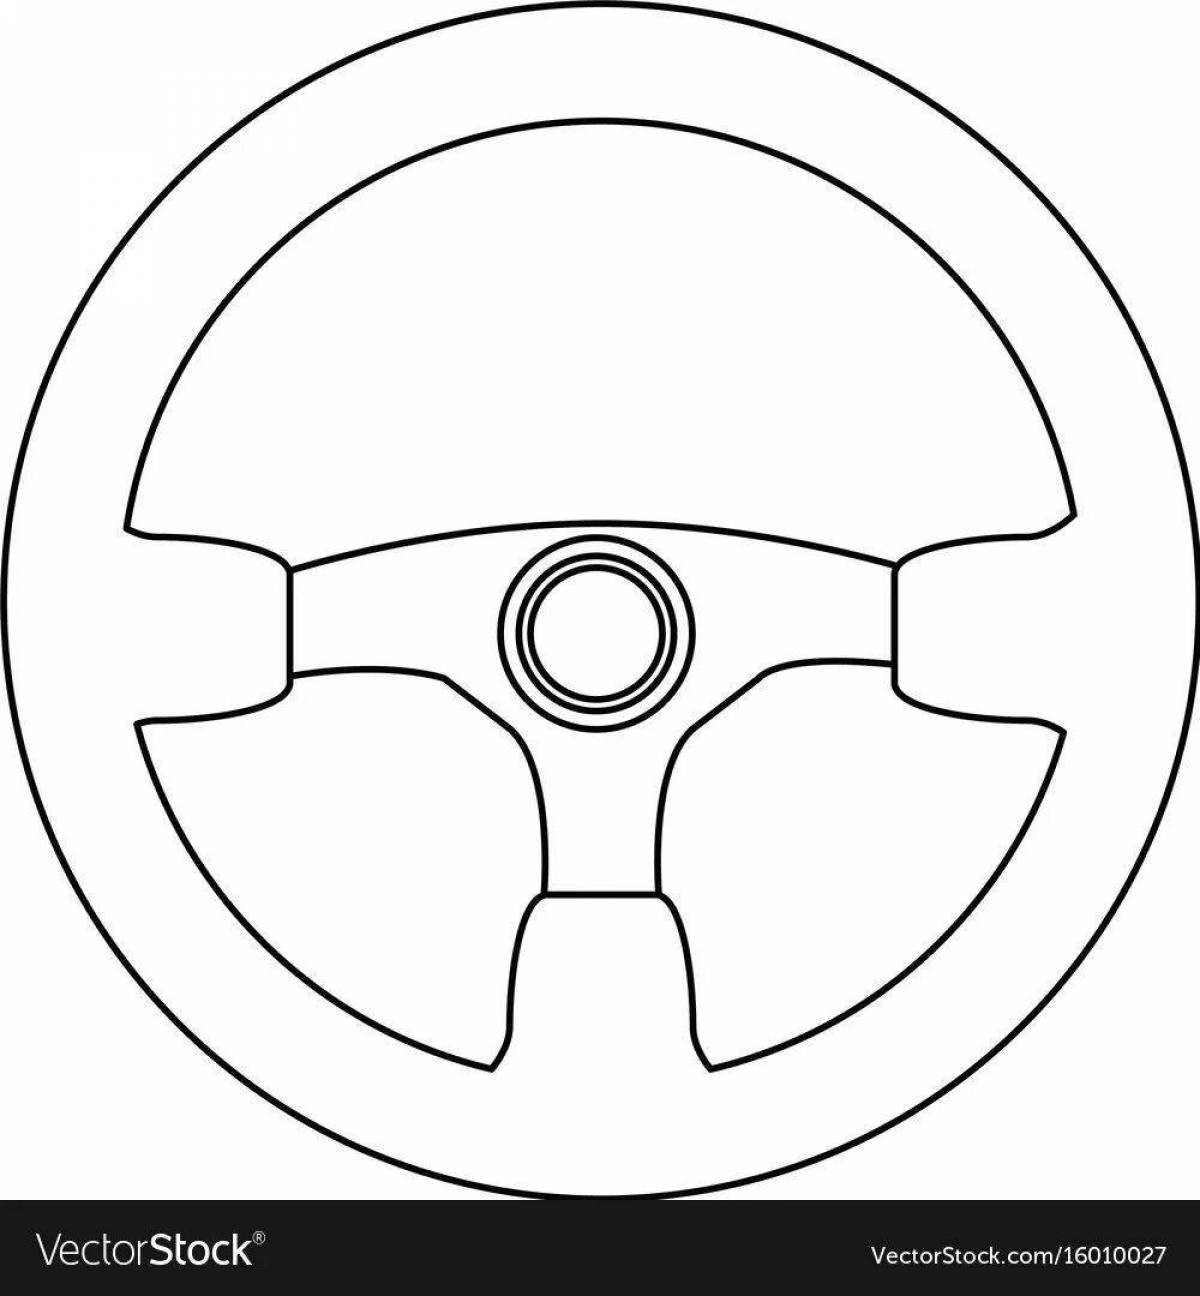 Fun coloring steering wheel for kids